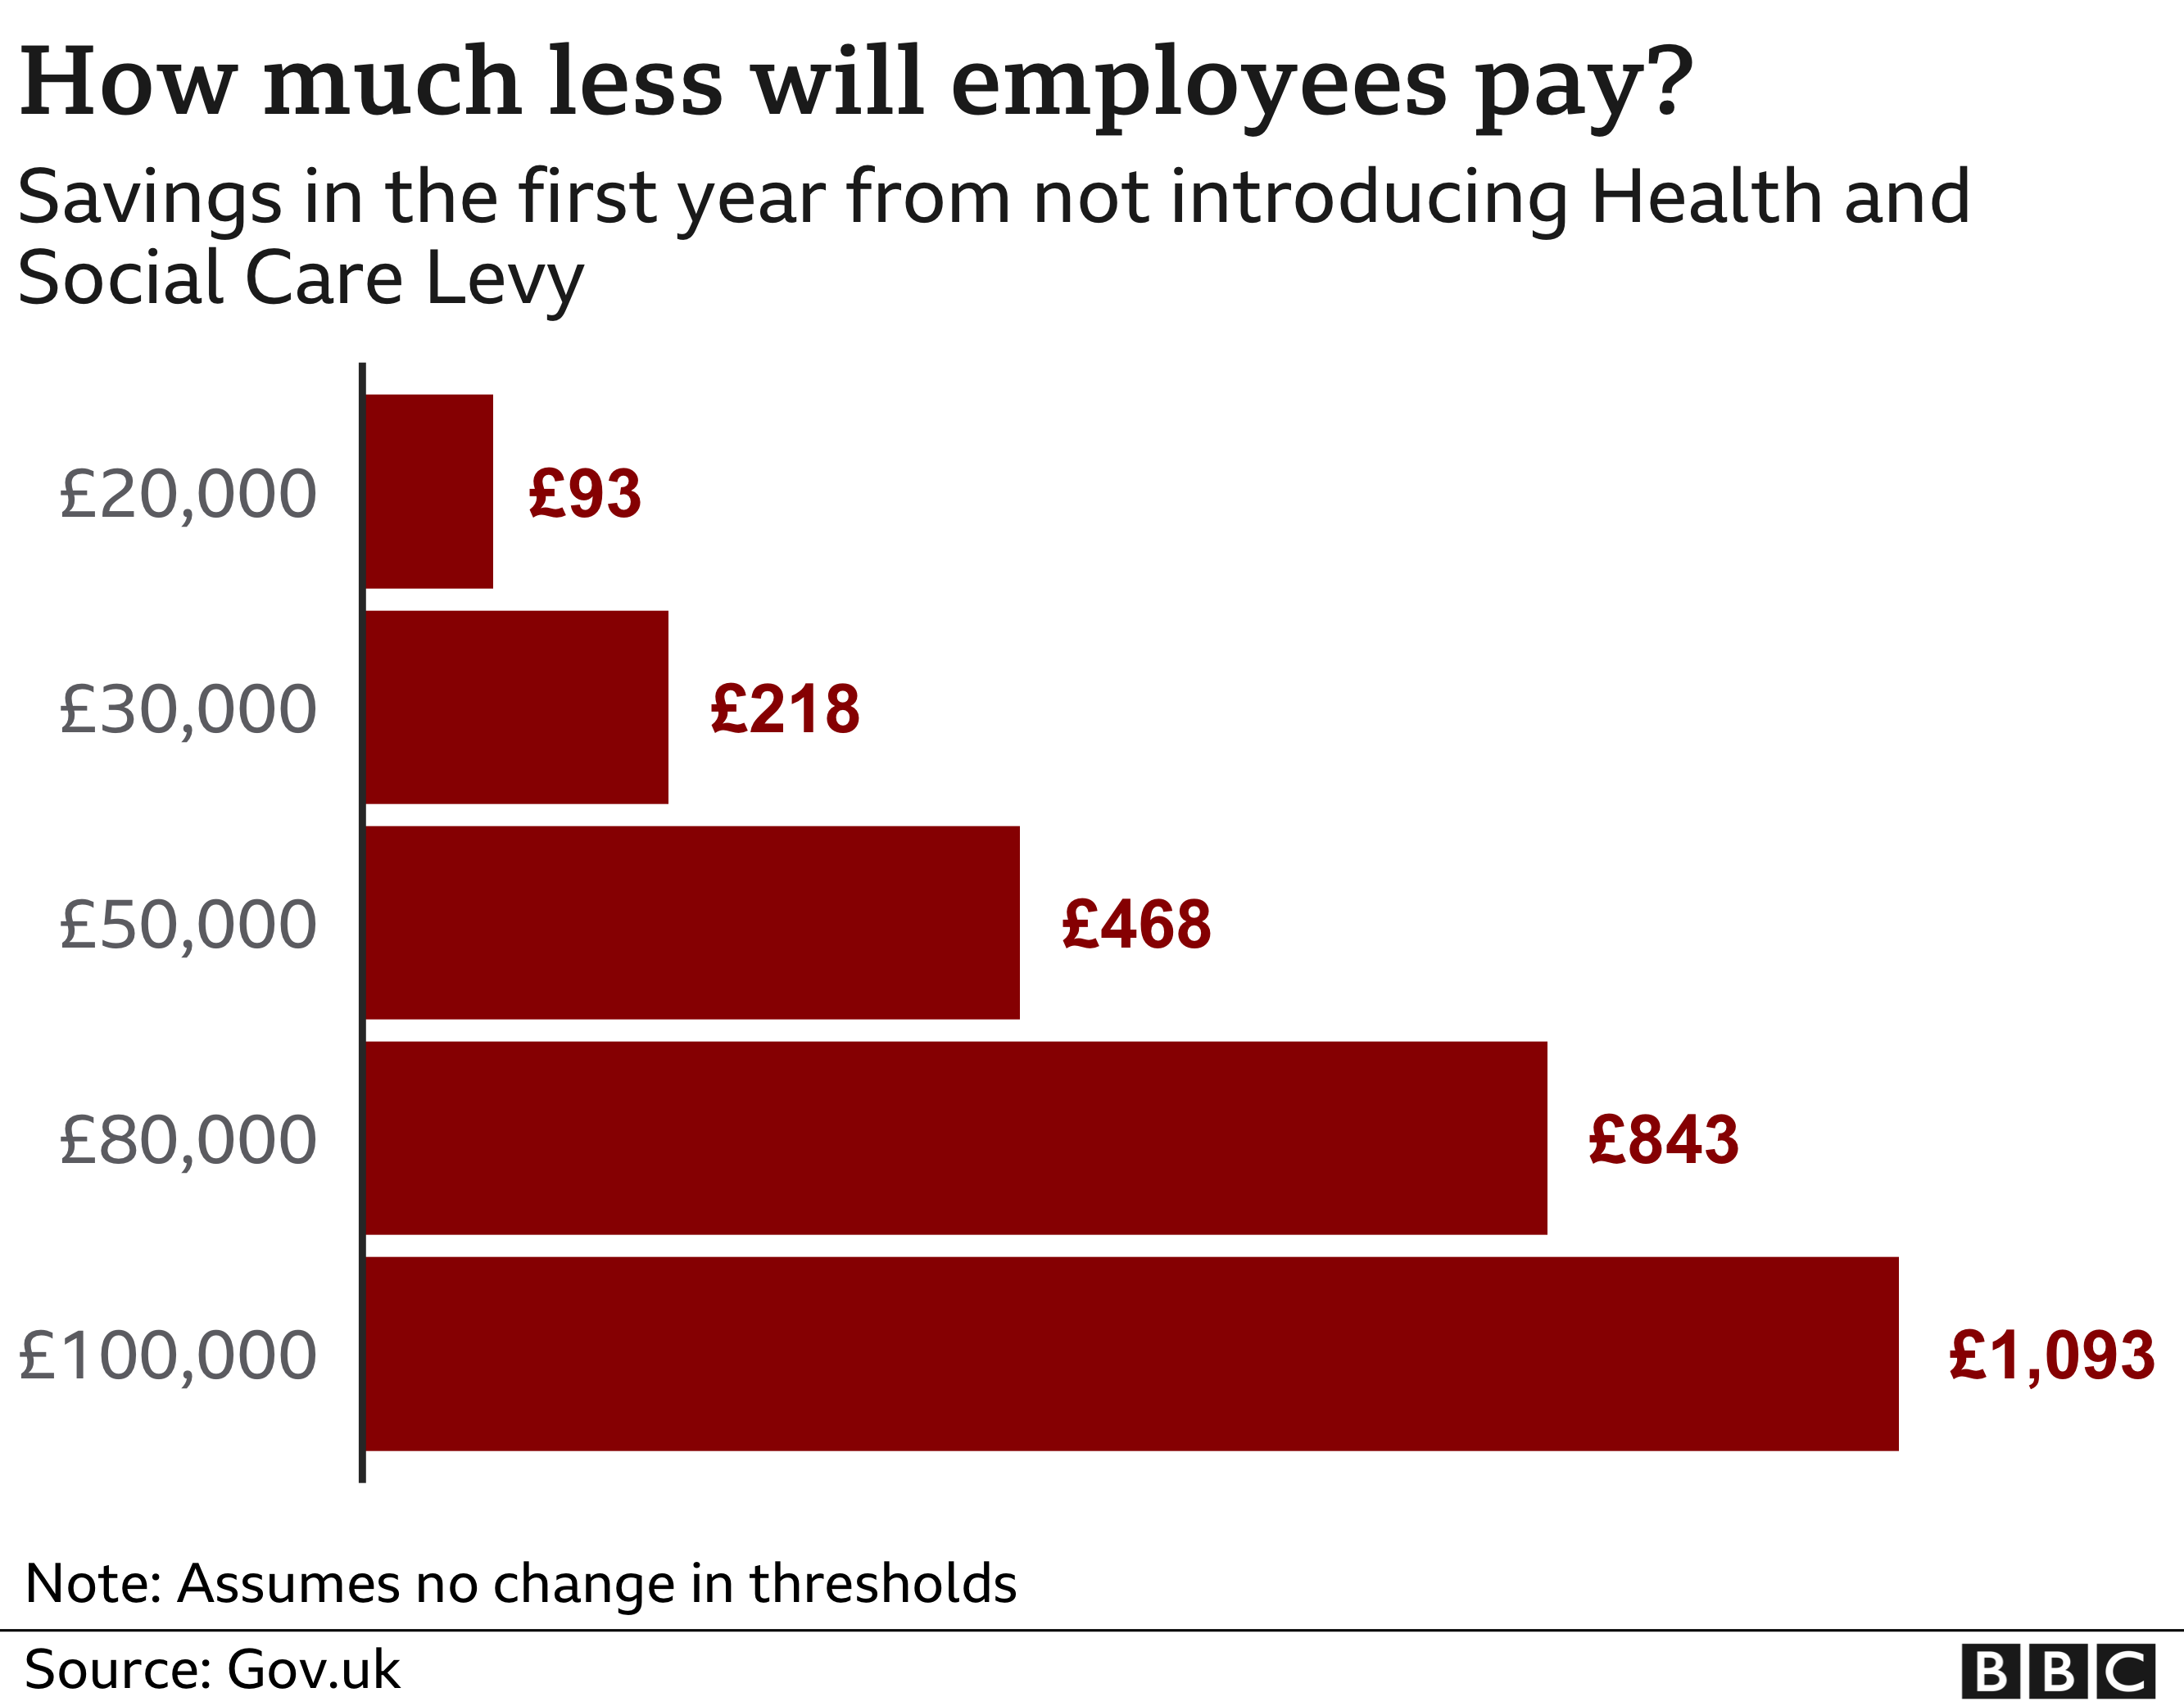 رسم بياني يوضح المبلغ الذي وفره الموظفون في السنة الأولى بعدم إدخال ضريبة الرعاية الصحية والاجتماعية